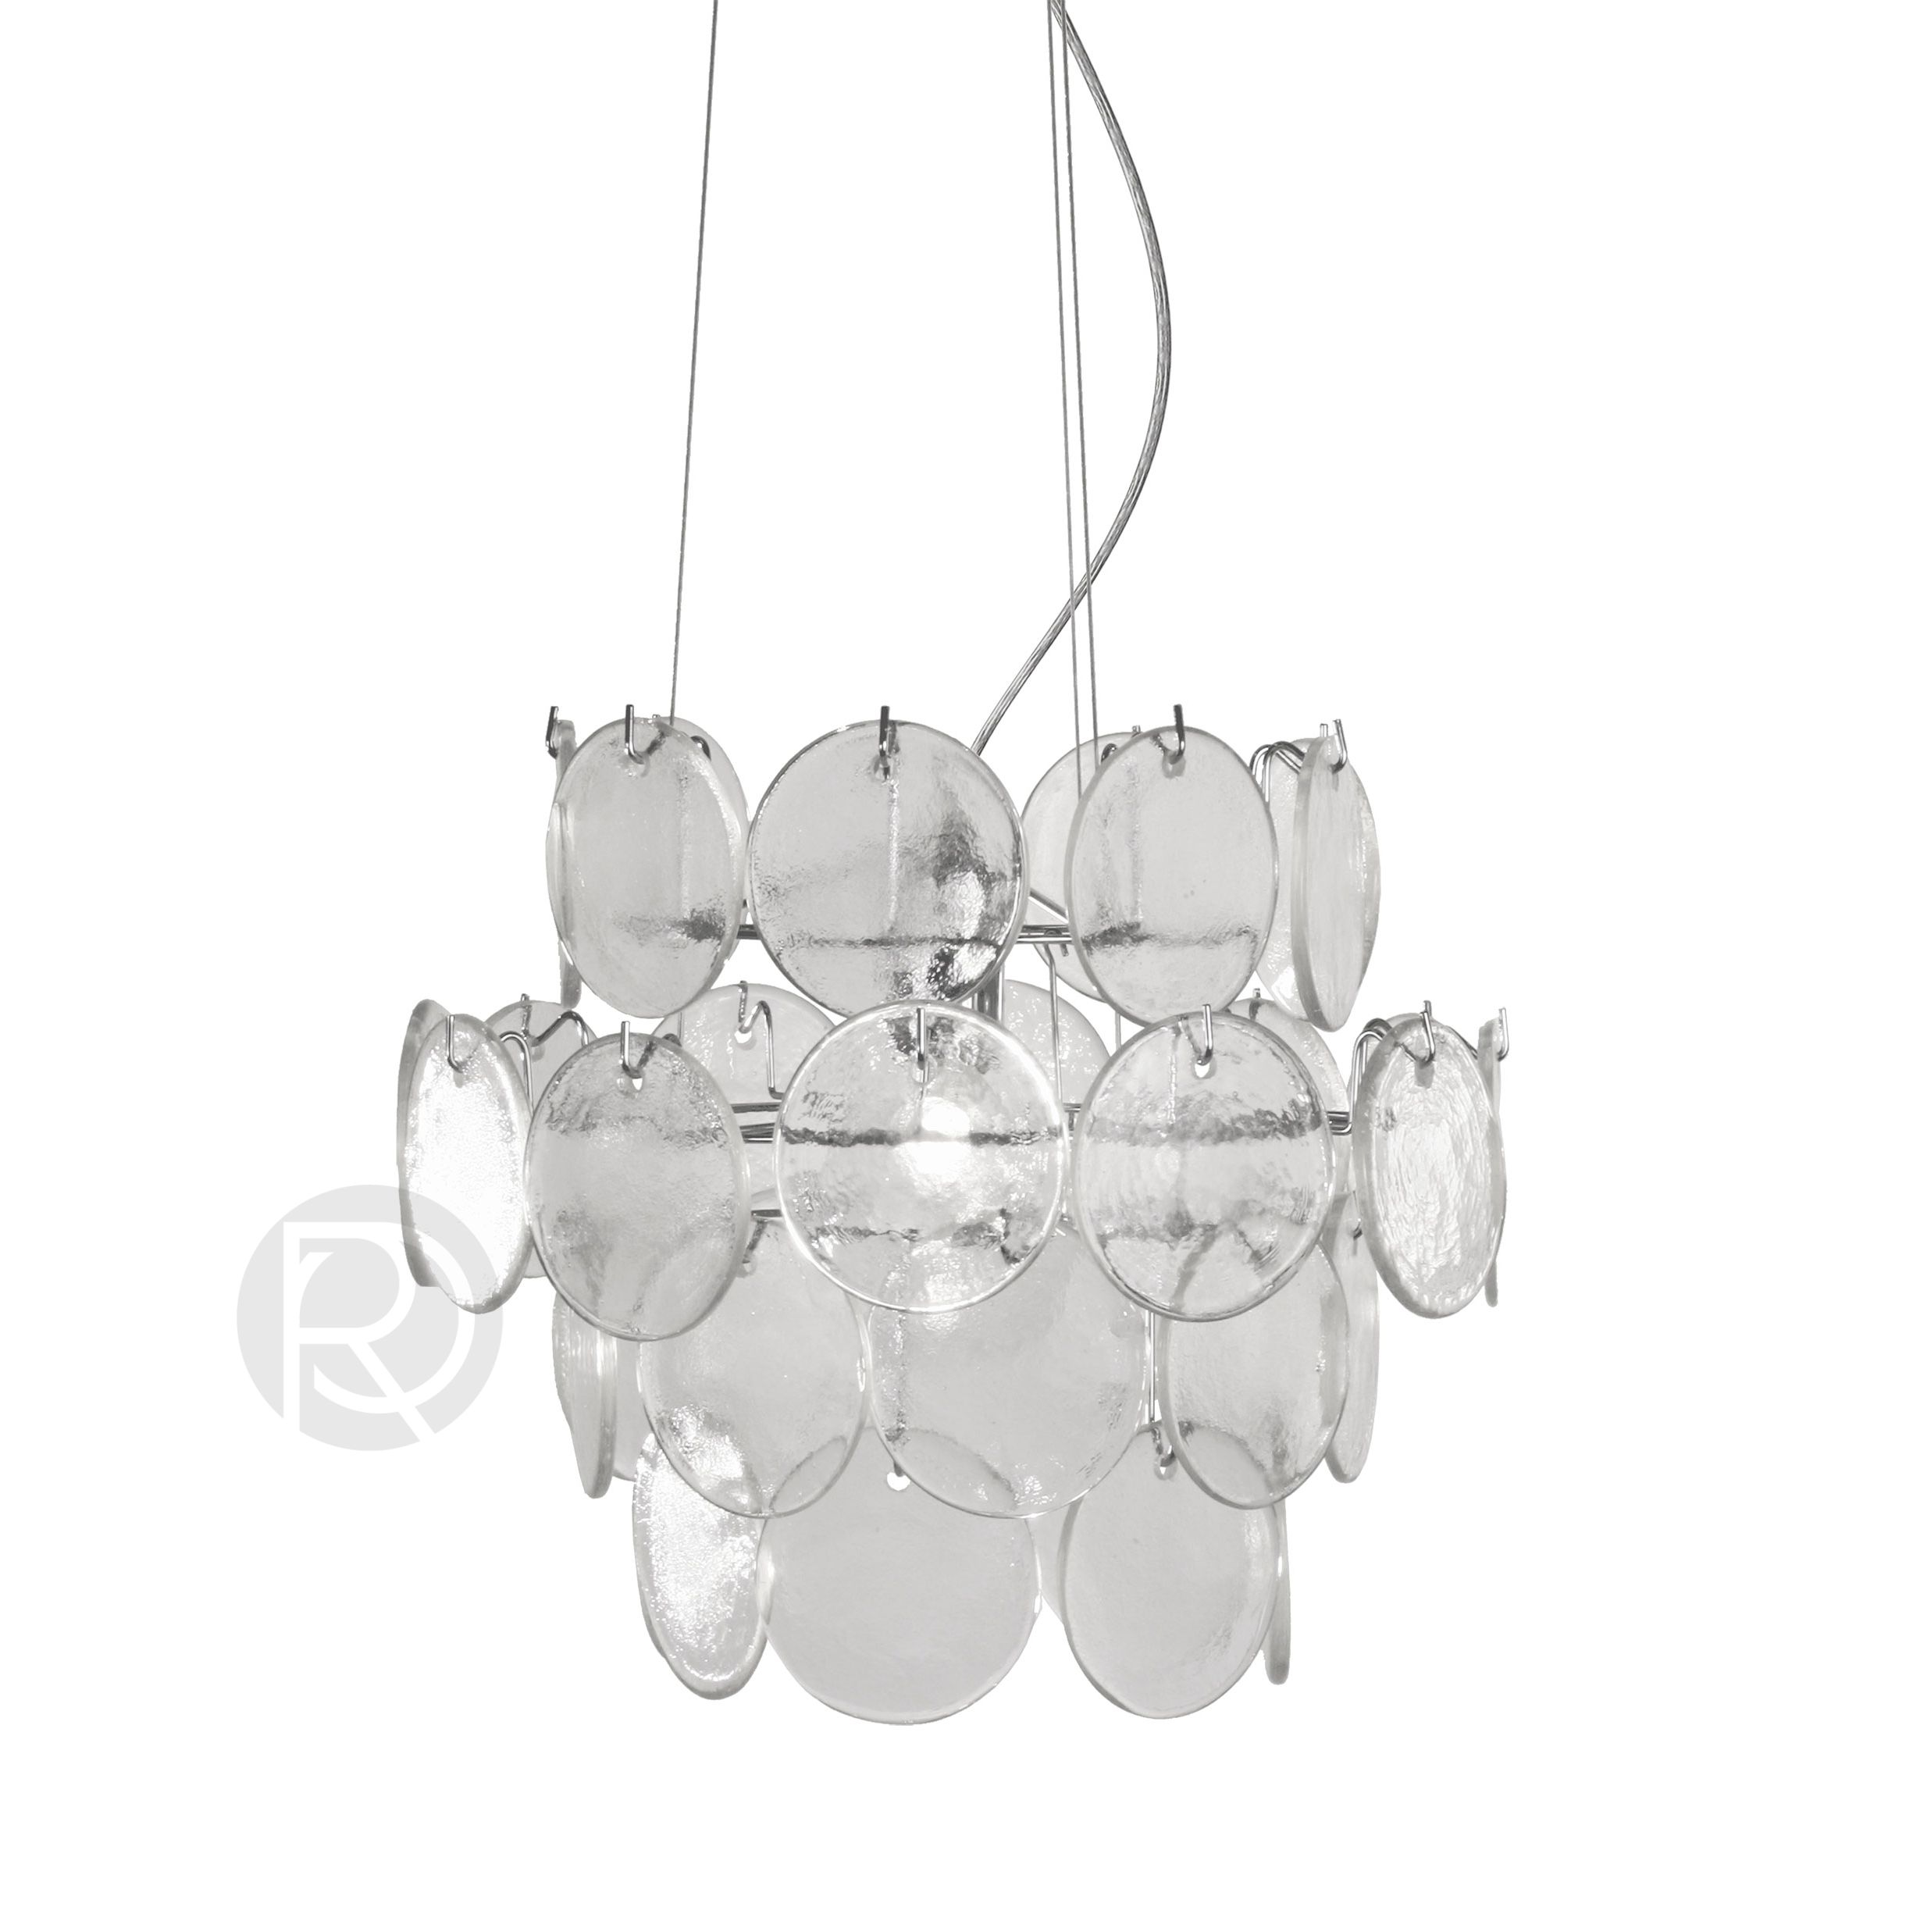 CIRRUS chandelier by Globen